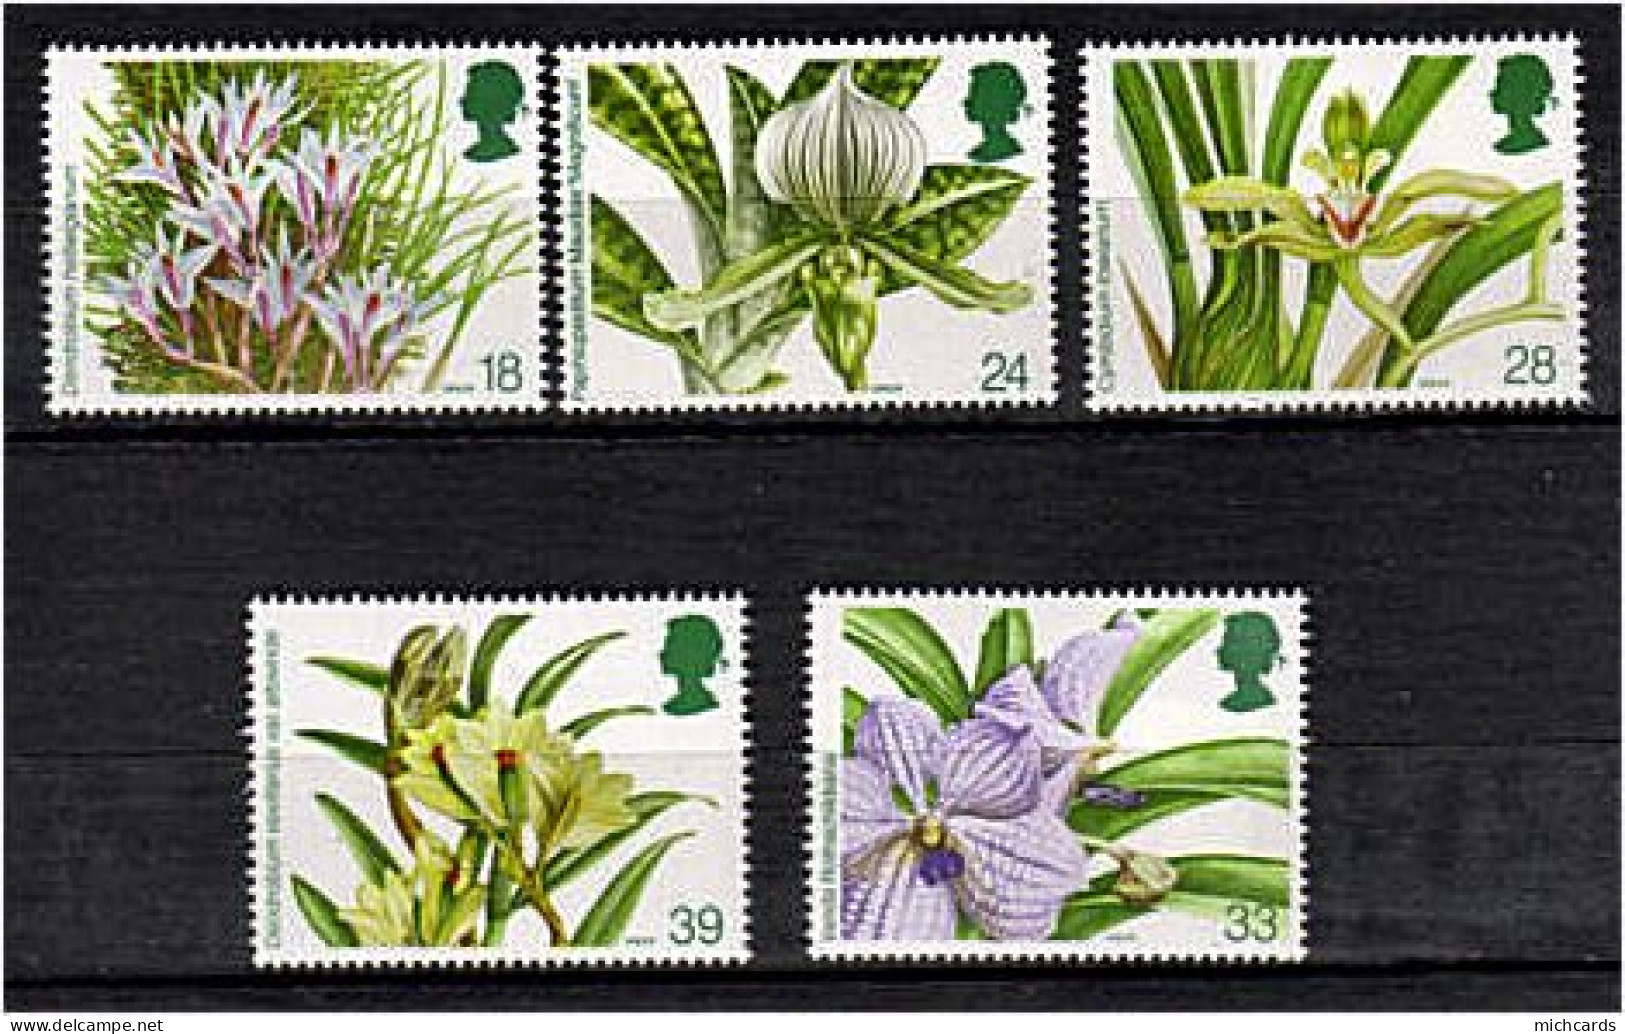 191 GRANDE BRETAGNE 1993 - Yvert 1665/69 - Orchidee Fleur - Neuf ** (MNH) Sans Charniere - Ungebraucht